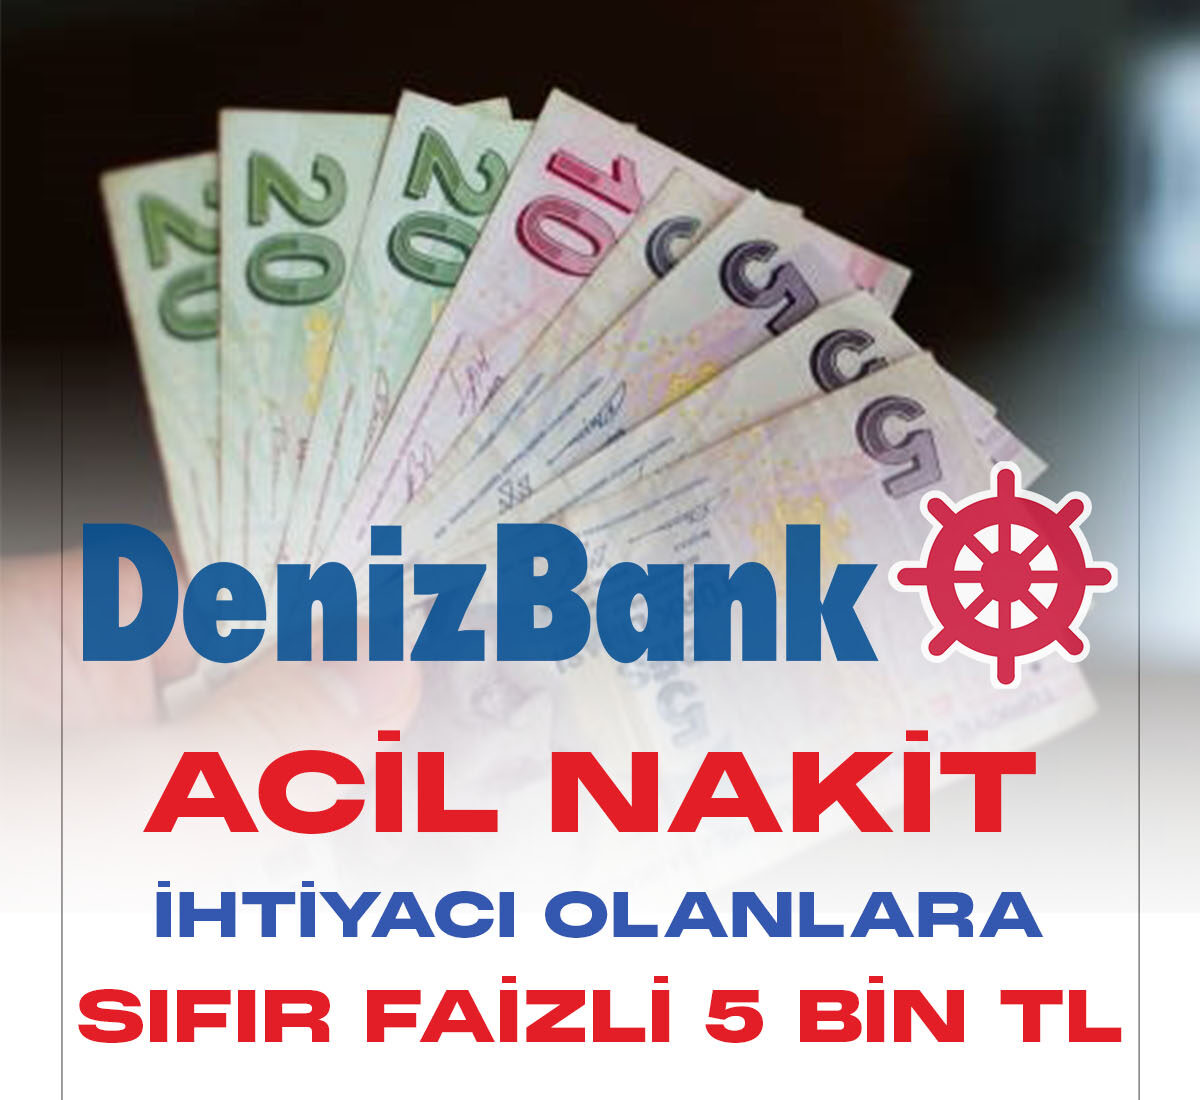 Denizbank 0 faizle 5 bin TL taksitli nakit avans kampanyası başladı. Y